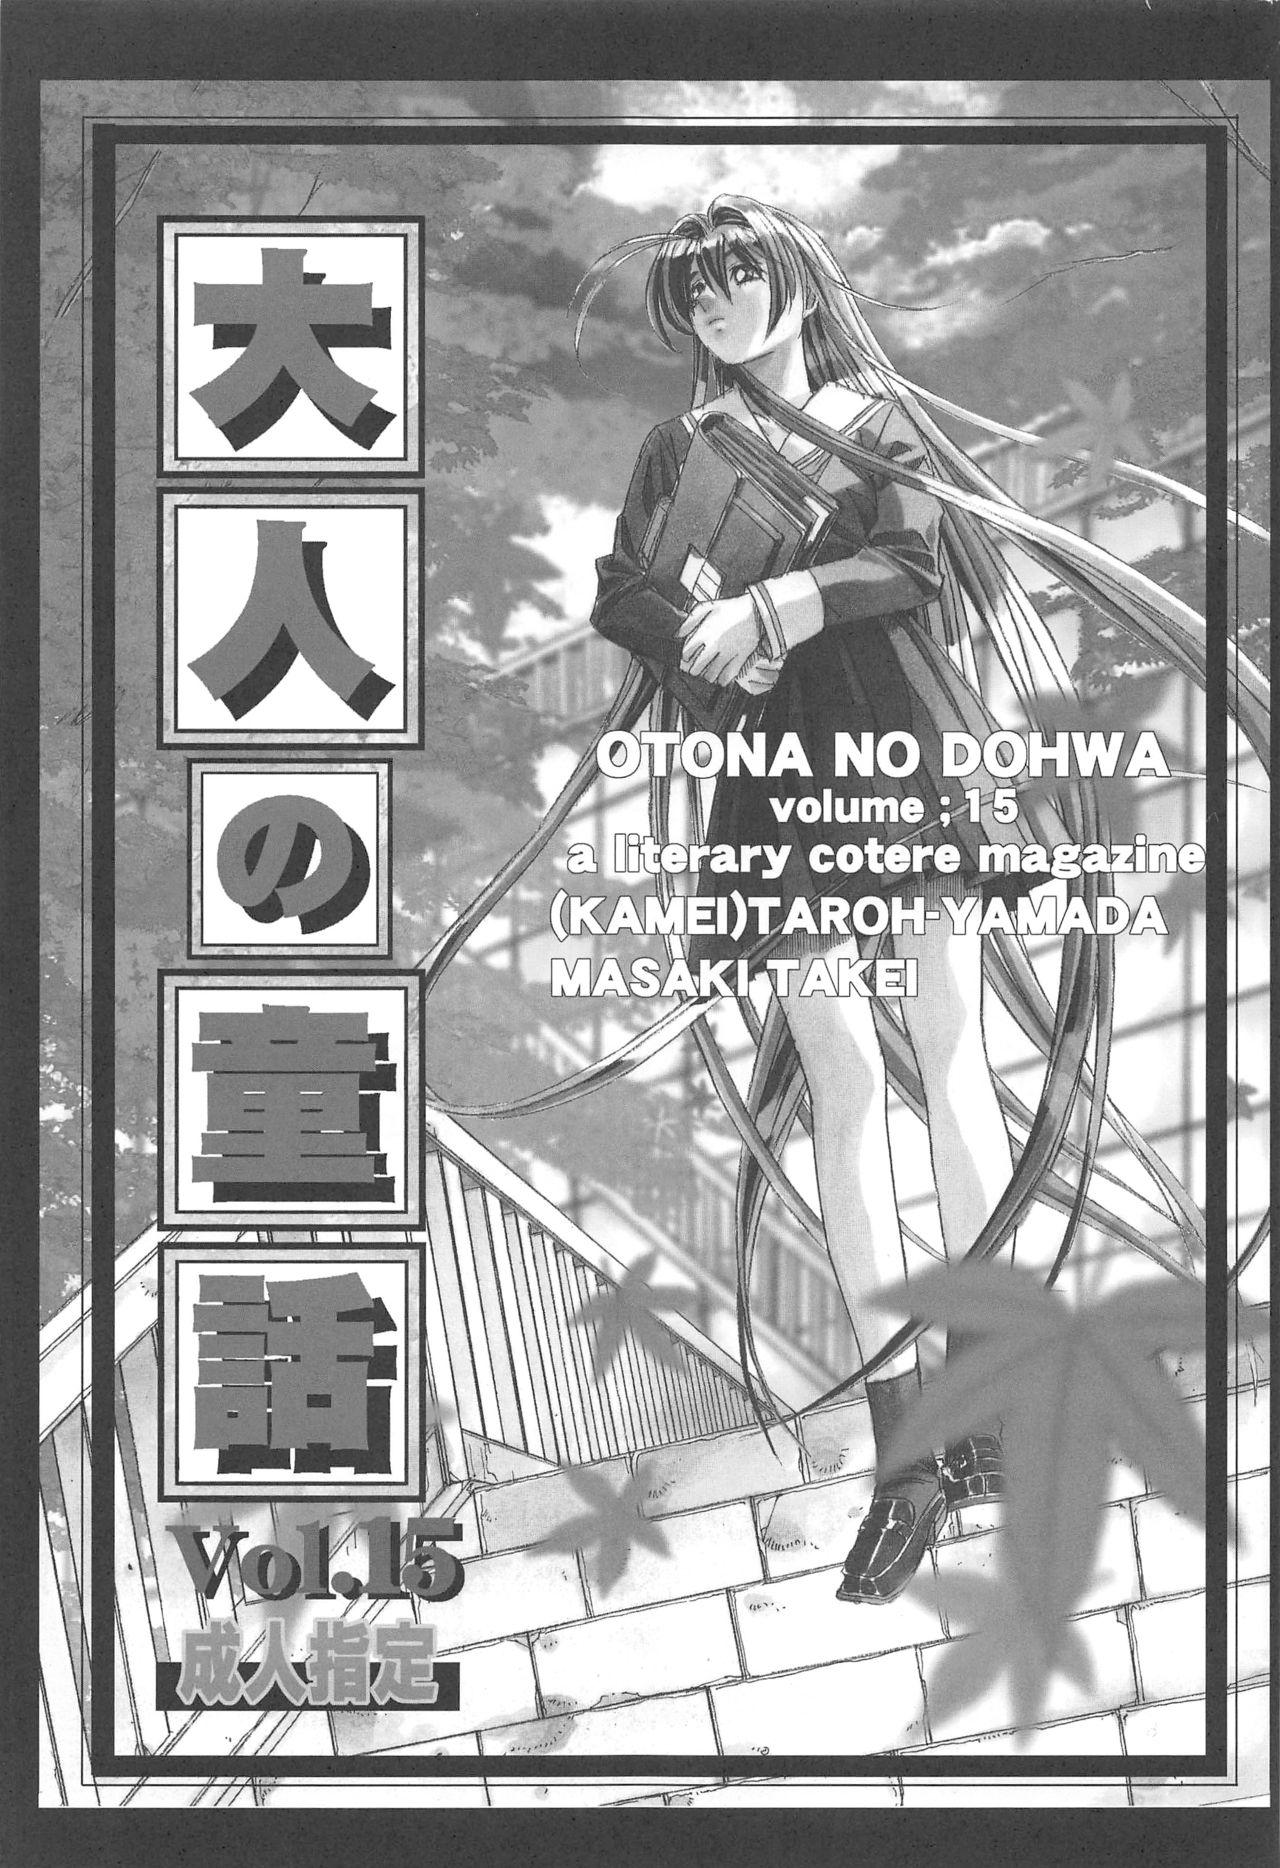 Otonano Do-wa Vol. 15 1